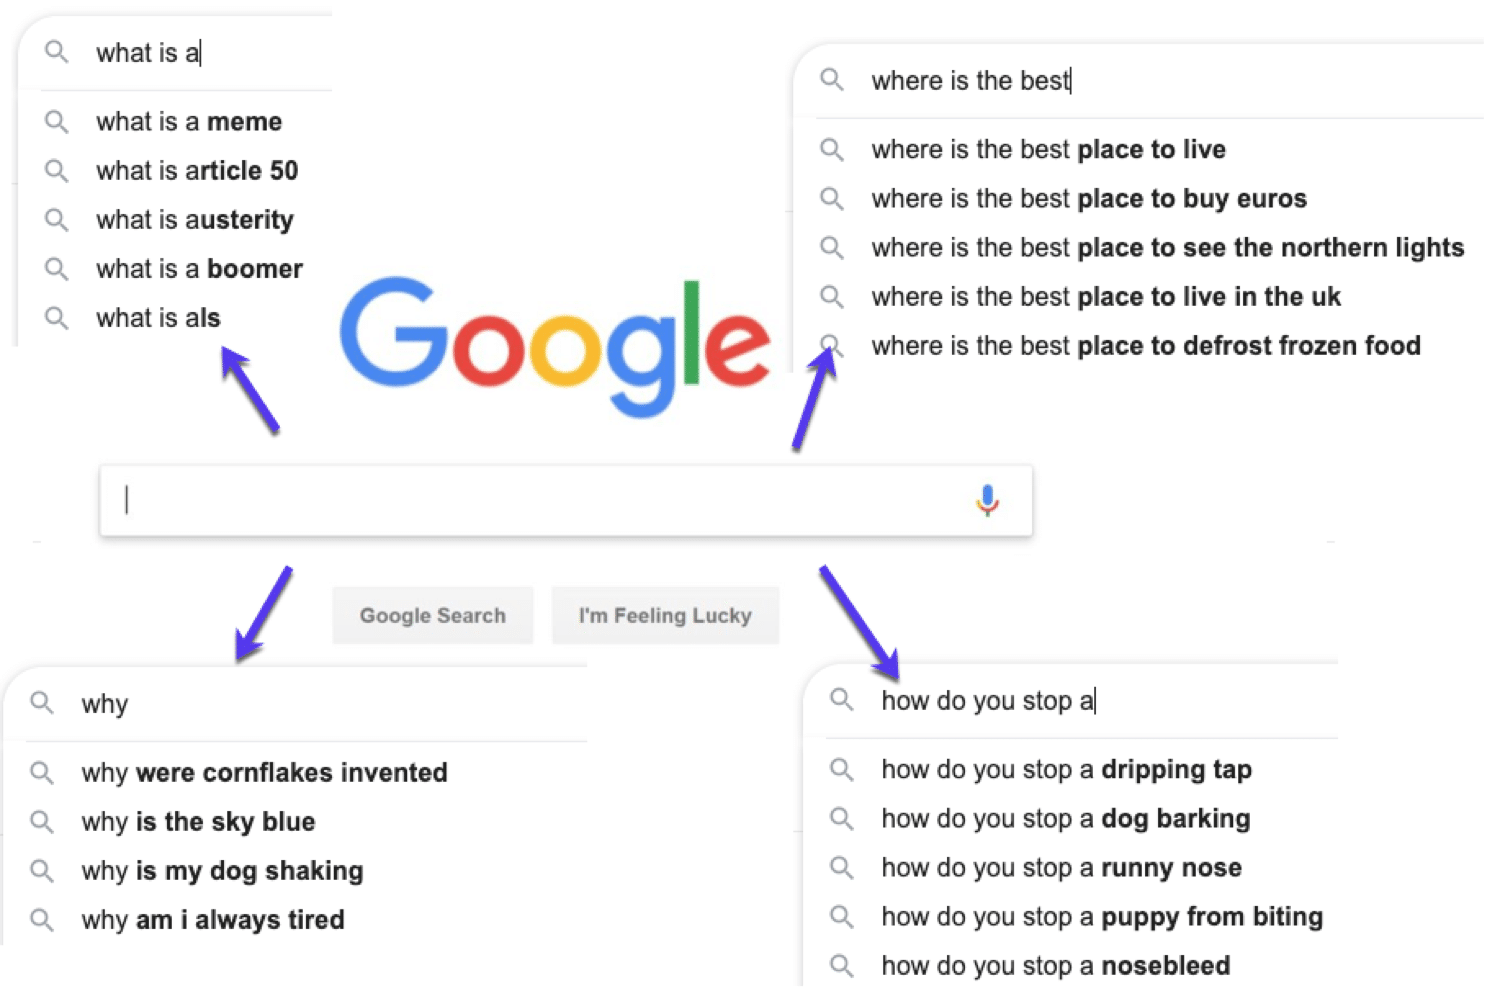 Beispiele für Fragen, die Menschen bei Google suchen